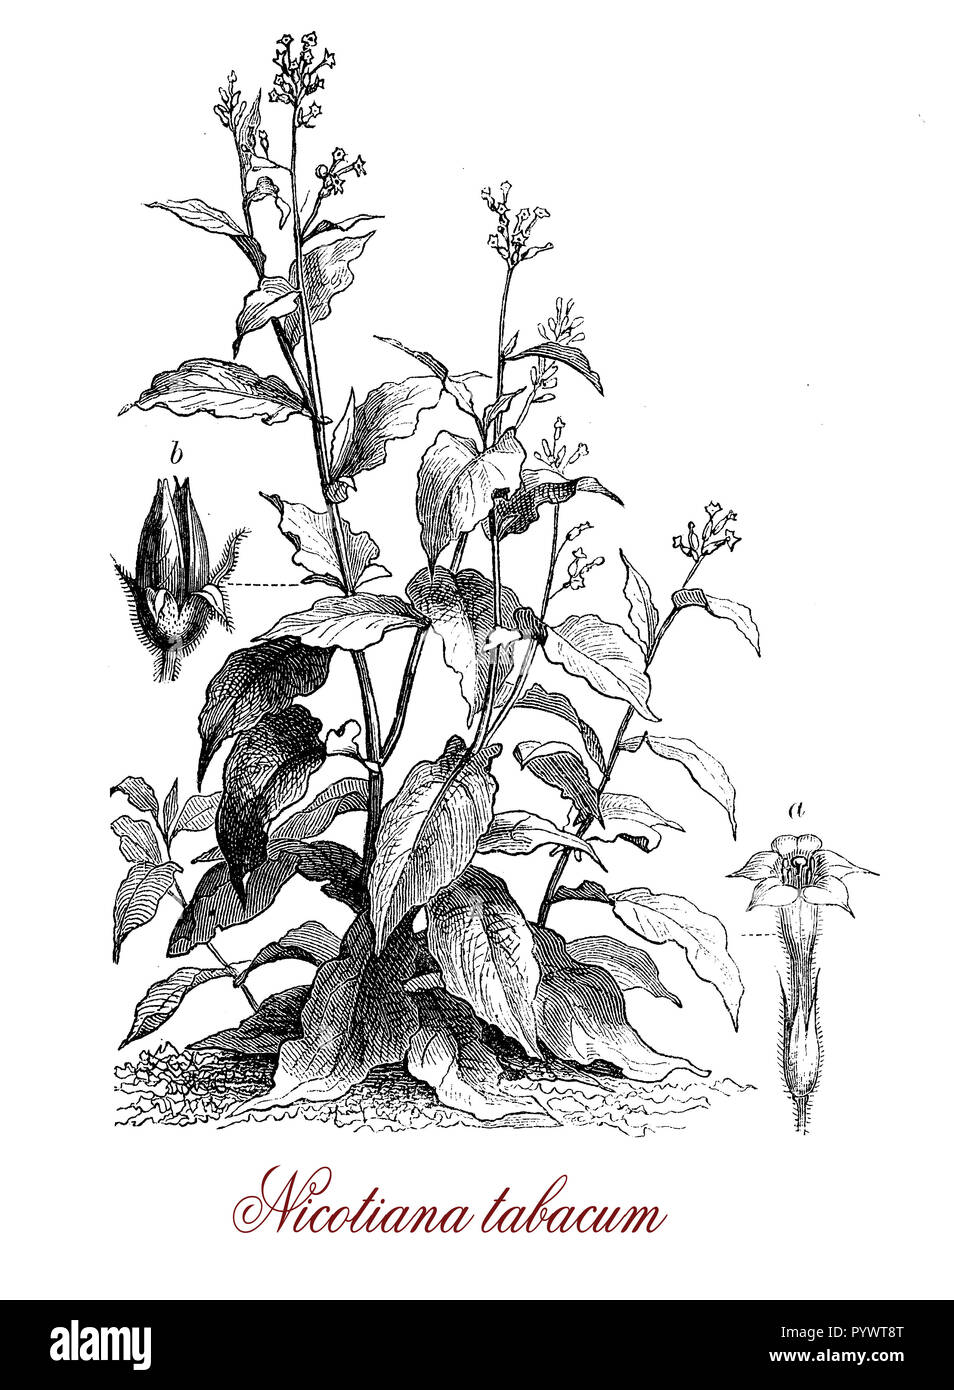 Vintage incisione botanico di tabacco coltivato, pianta che si trova solo in coltivazione, le foglie sono commercialmente trasformati in tabacco. Tutte le piante di parte sono appiccicosi ricoperti da una secrezione contenente nicotina, ad eccezione delle sementi. Foto Stock